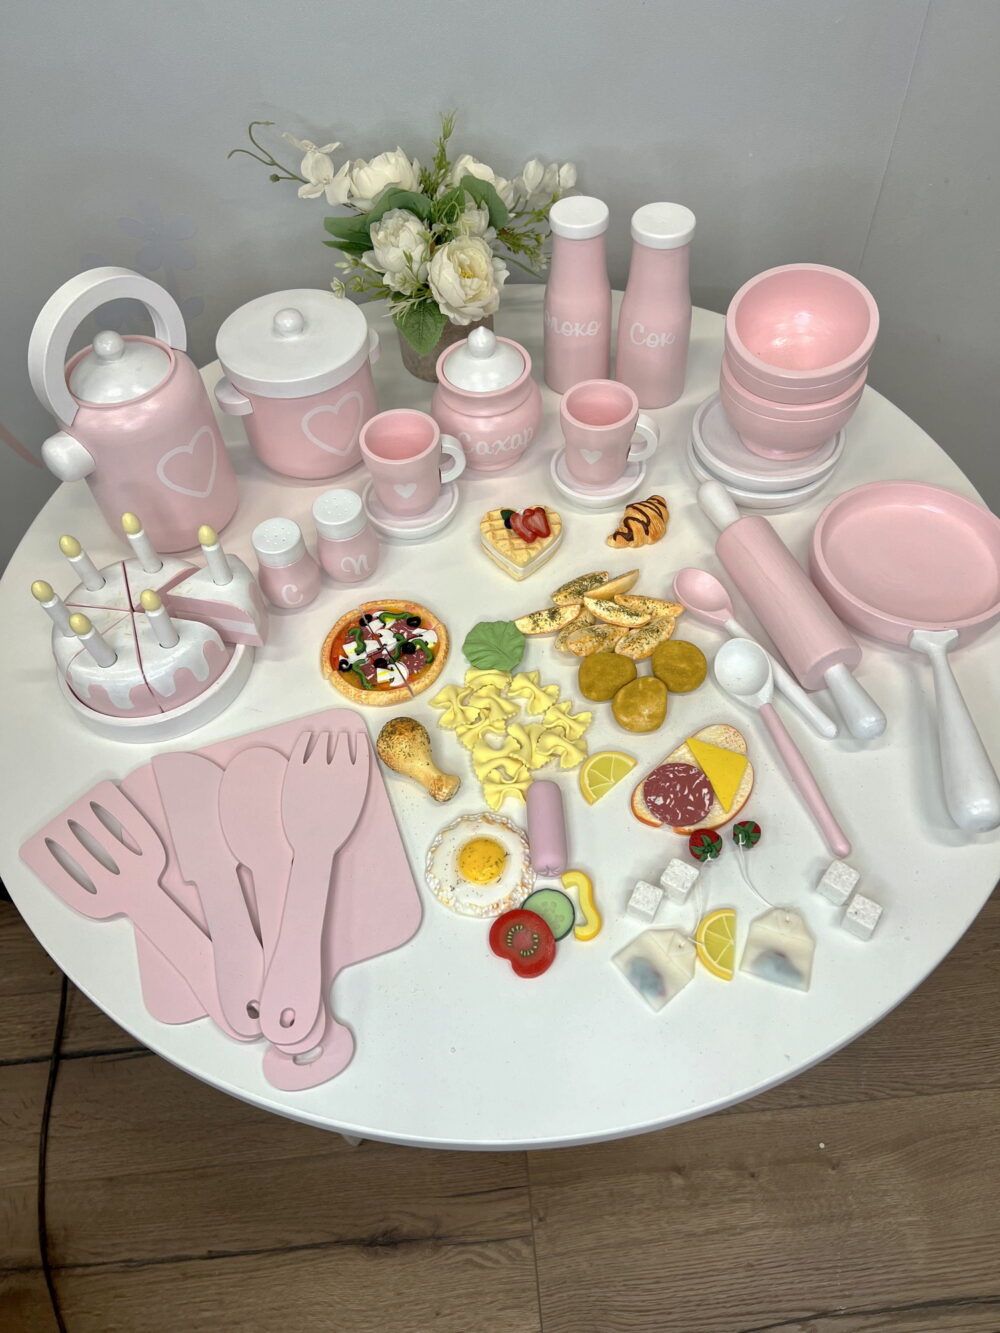 Набор детской игровой посуды розовый, полный комплект, общий вид плюс игрушечная еда из полимерной глины